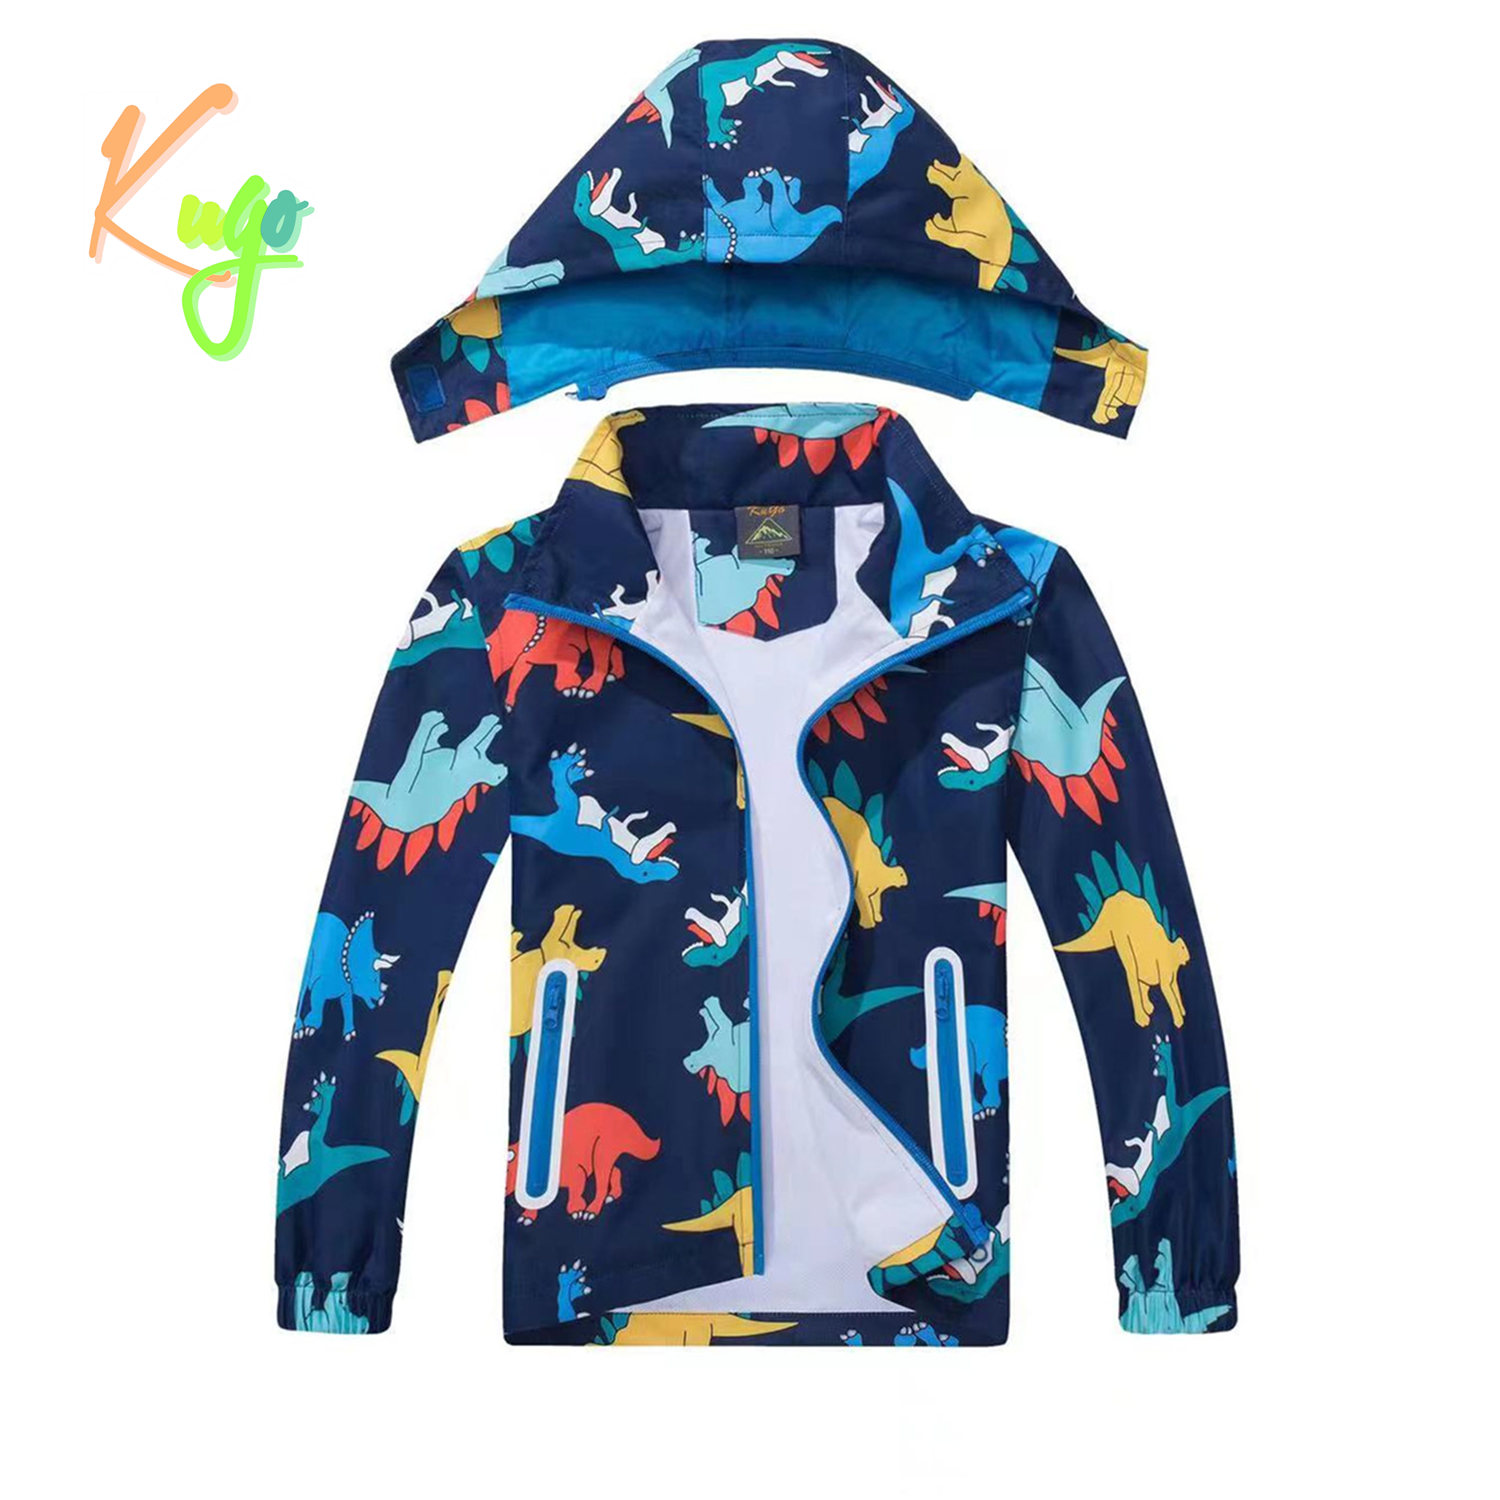 Chlapecká jarní, podzimní bunda - KUGO B2849, tmavě modrá / dinosaurus Barva: Modrá tmavě, Velikost: 122